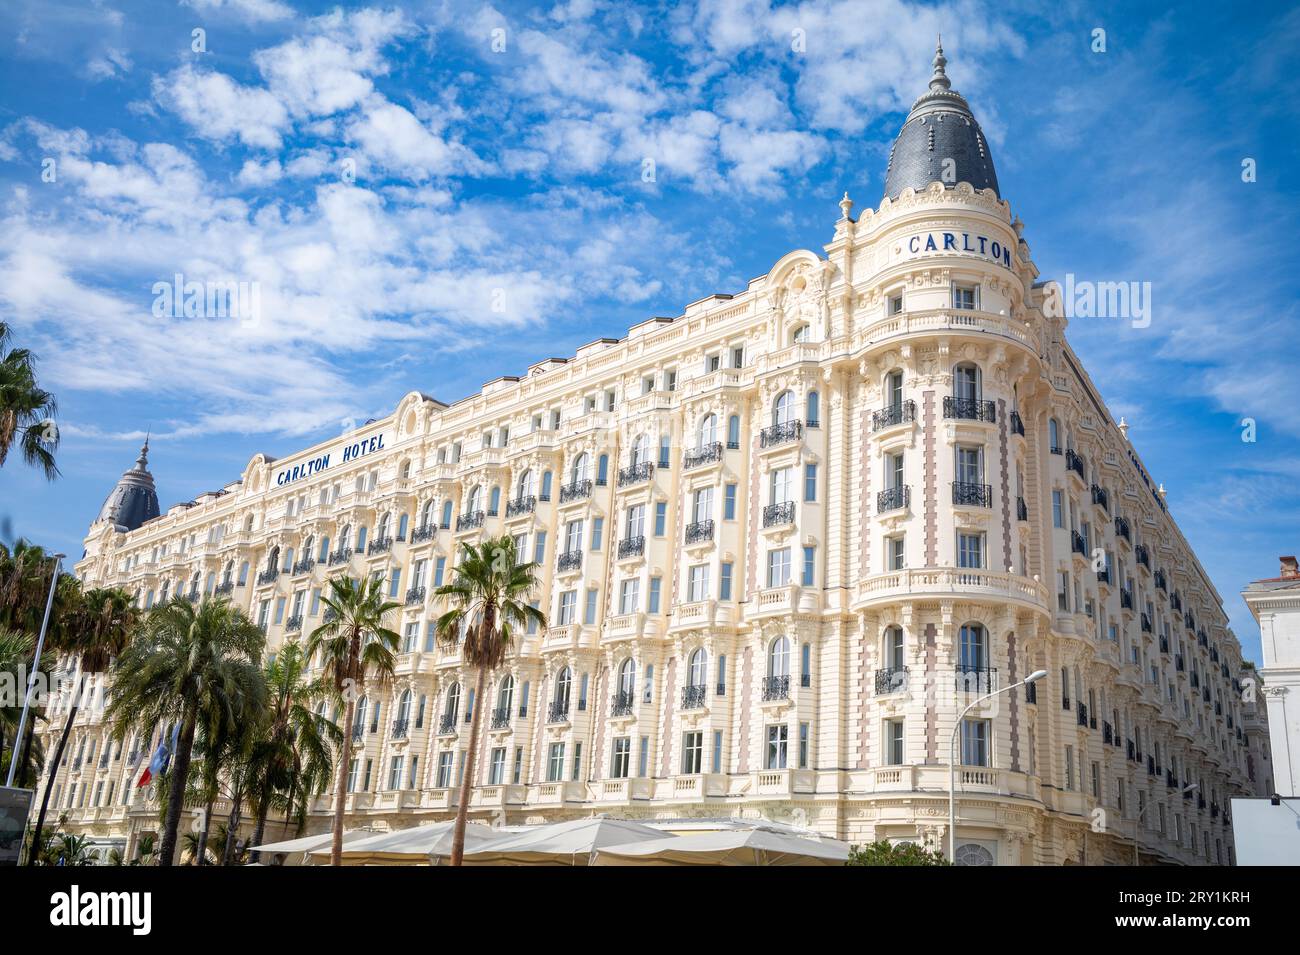 El lujoso Carlton Hotel está situado en el Boulevard de la Croisette, justo enfrente del mar Mediterráneo, en Cannes, Francia. Uno de los más icónicos Foto de stock